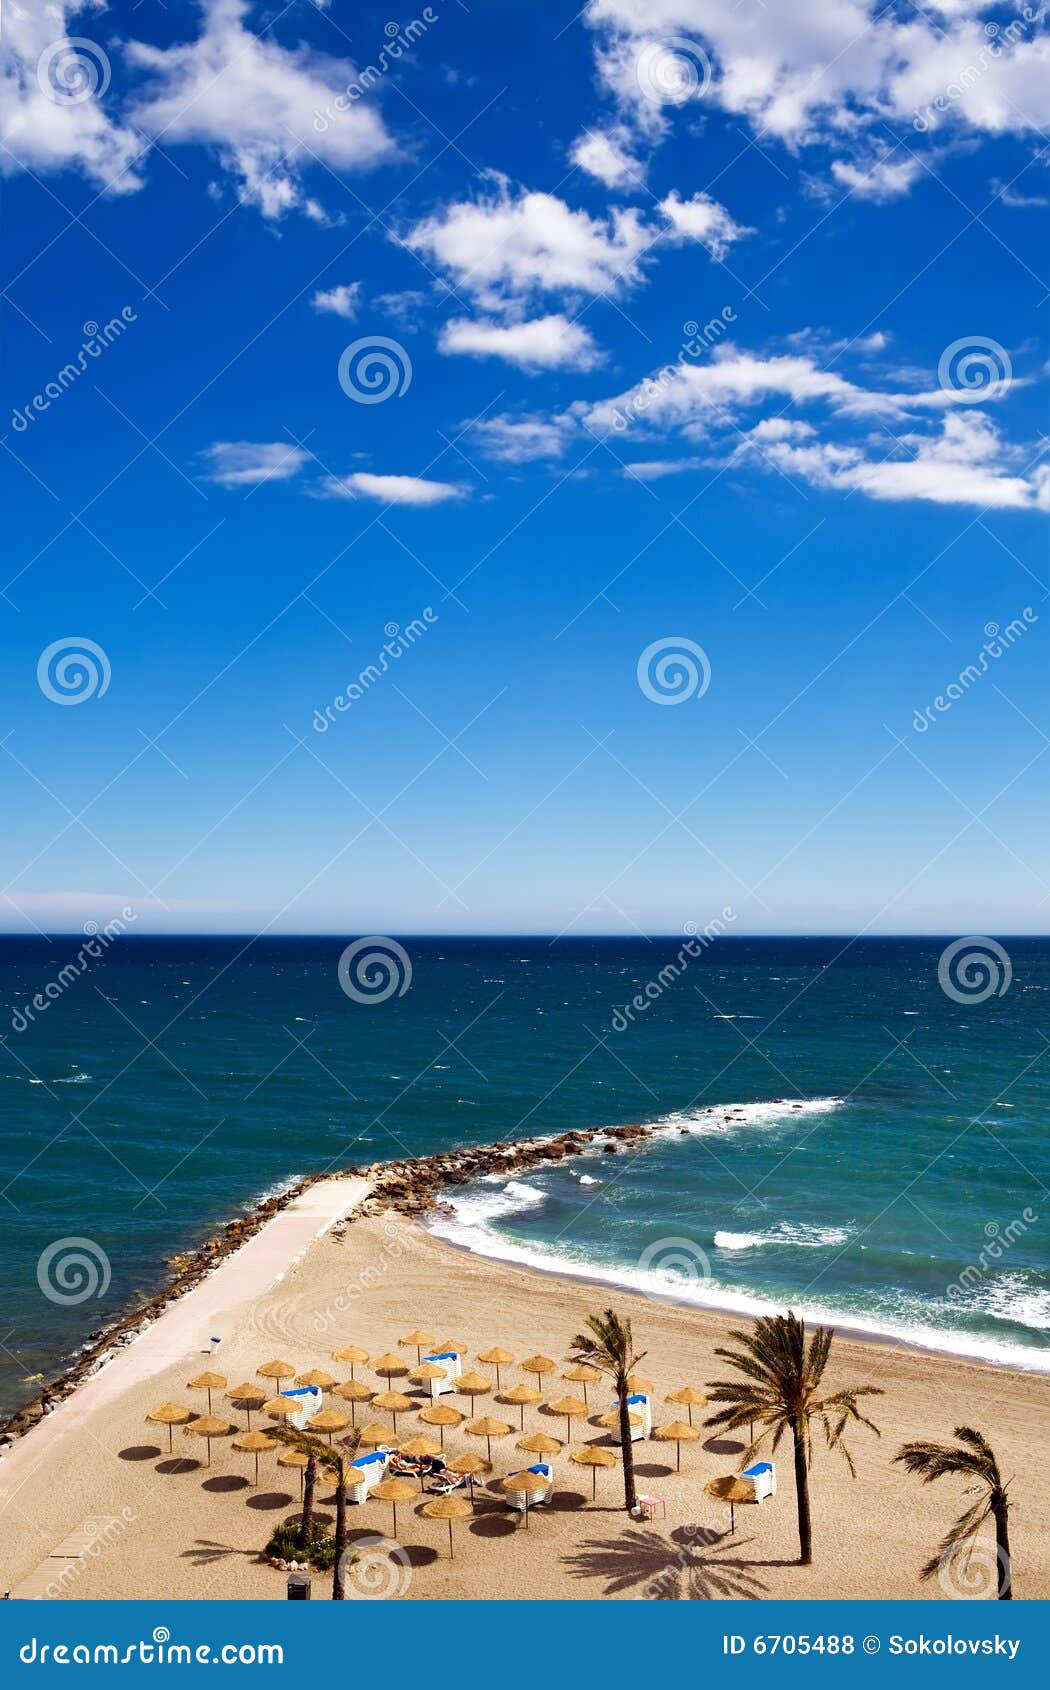 view of costa del sol beach